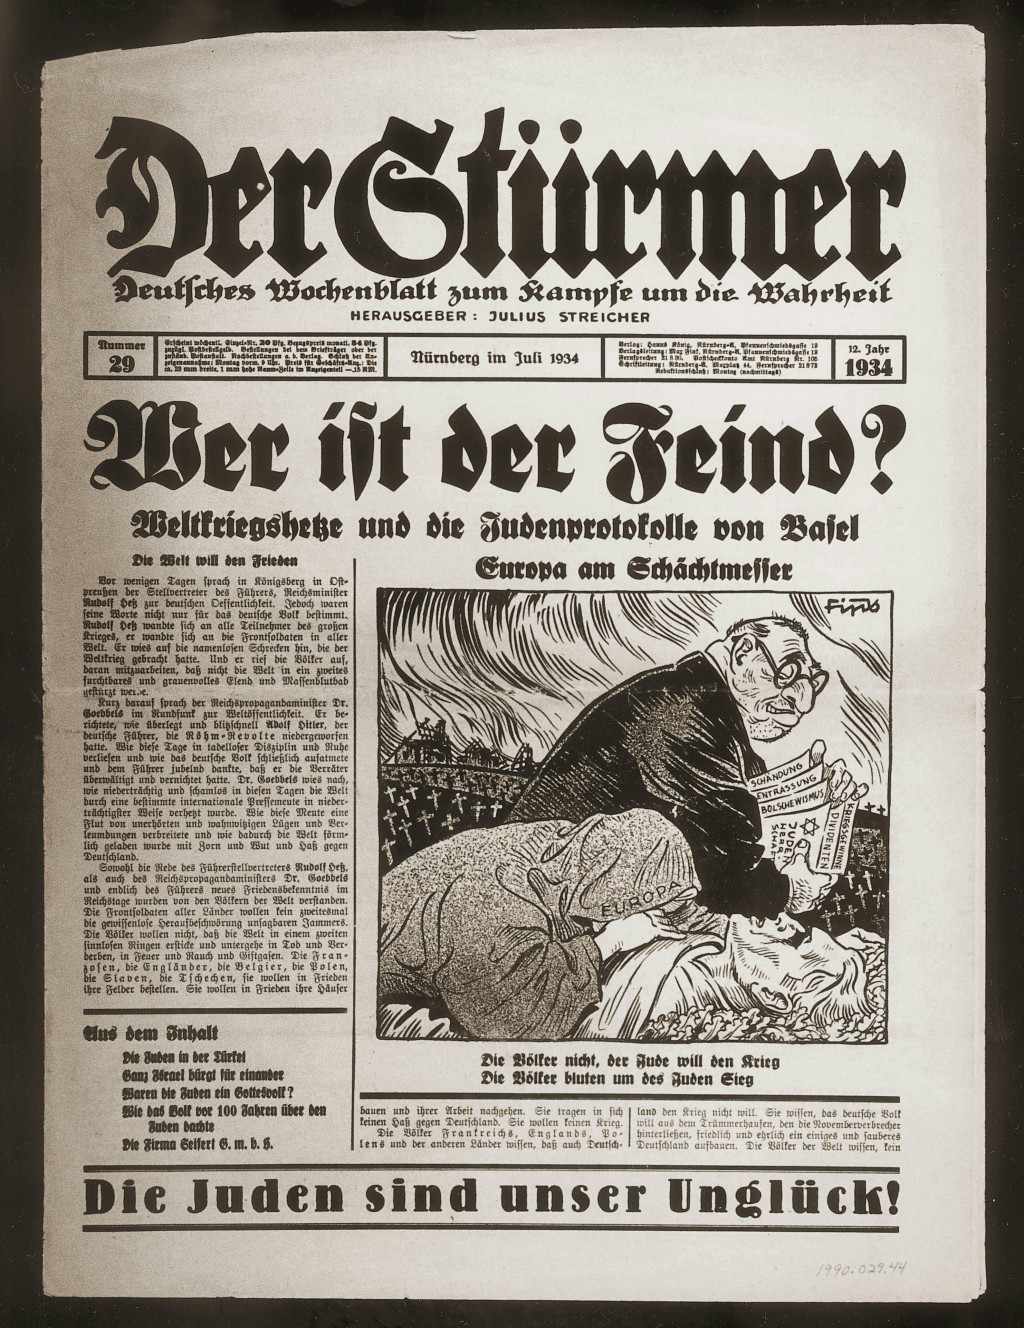 Der Stuermer, number 29, July 1934 [LCID: 20064qt9]